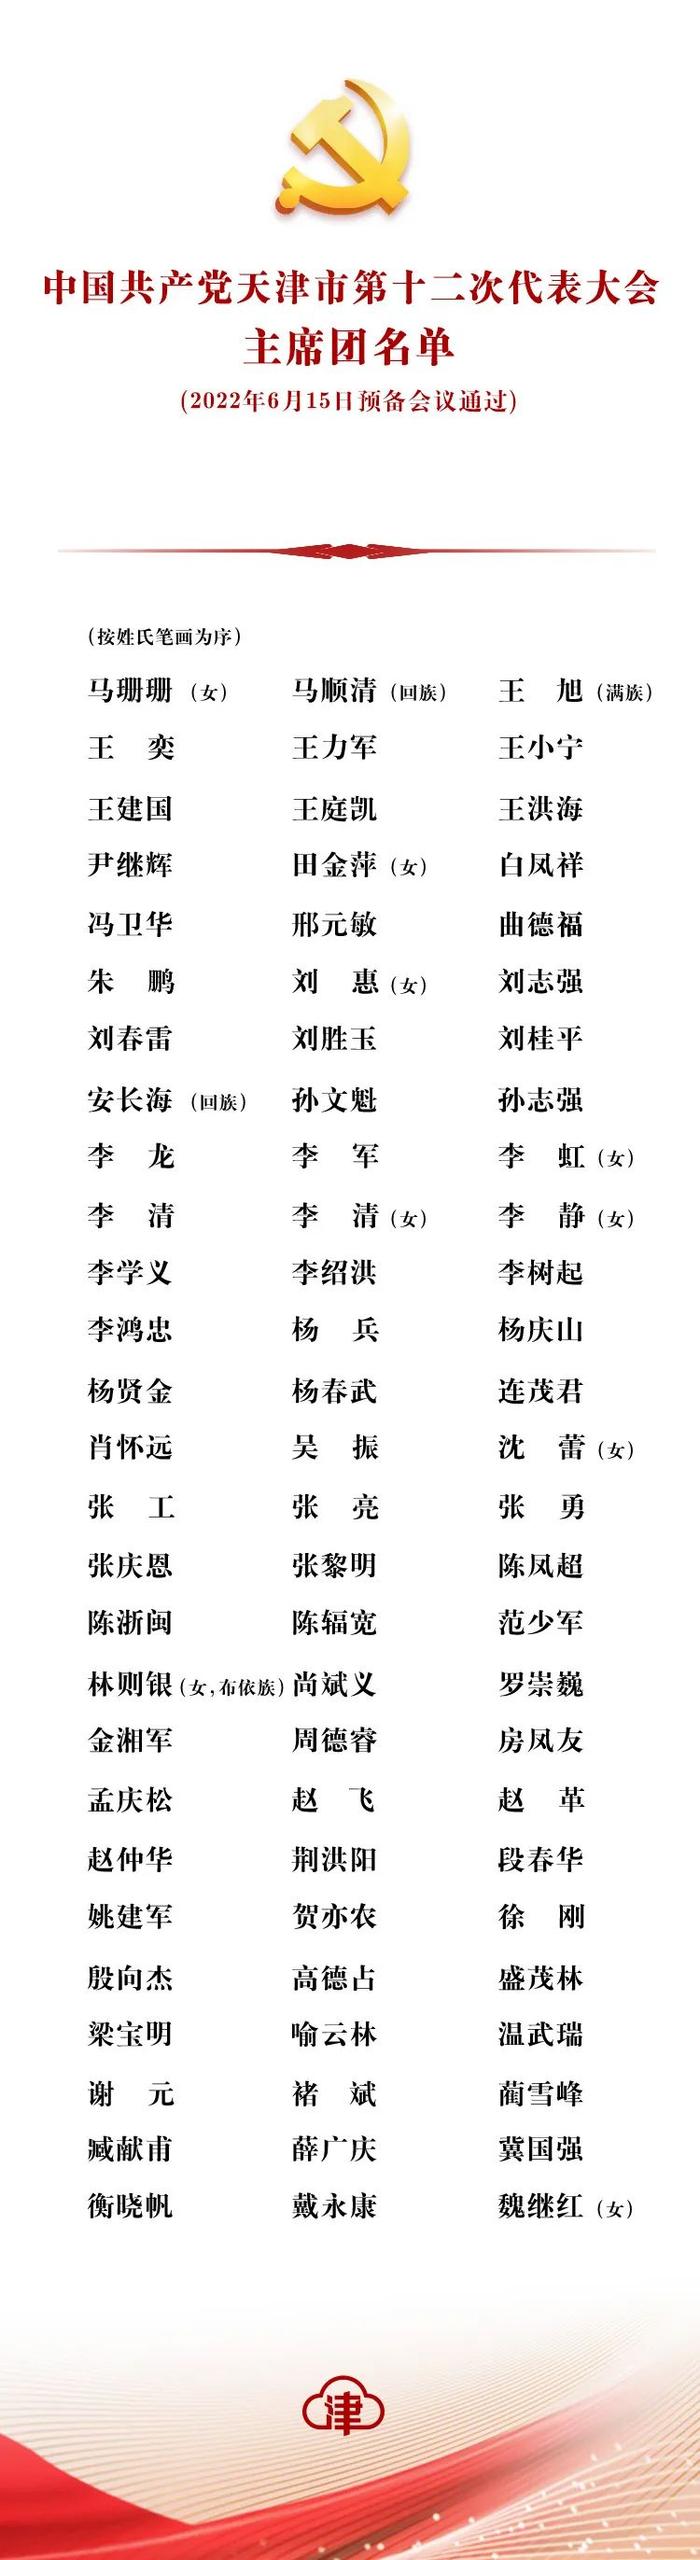 时政 | 中国共产党天津市第十二次代表大会主席团、主席团常务委员会、秘书长、副秘书长、代表资格审查委员会名单